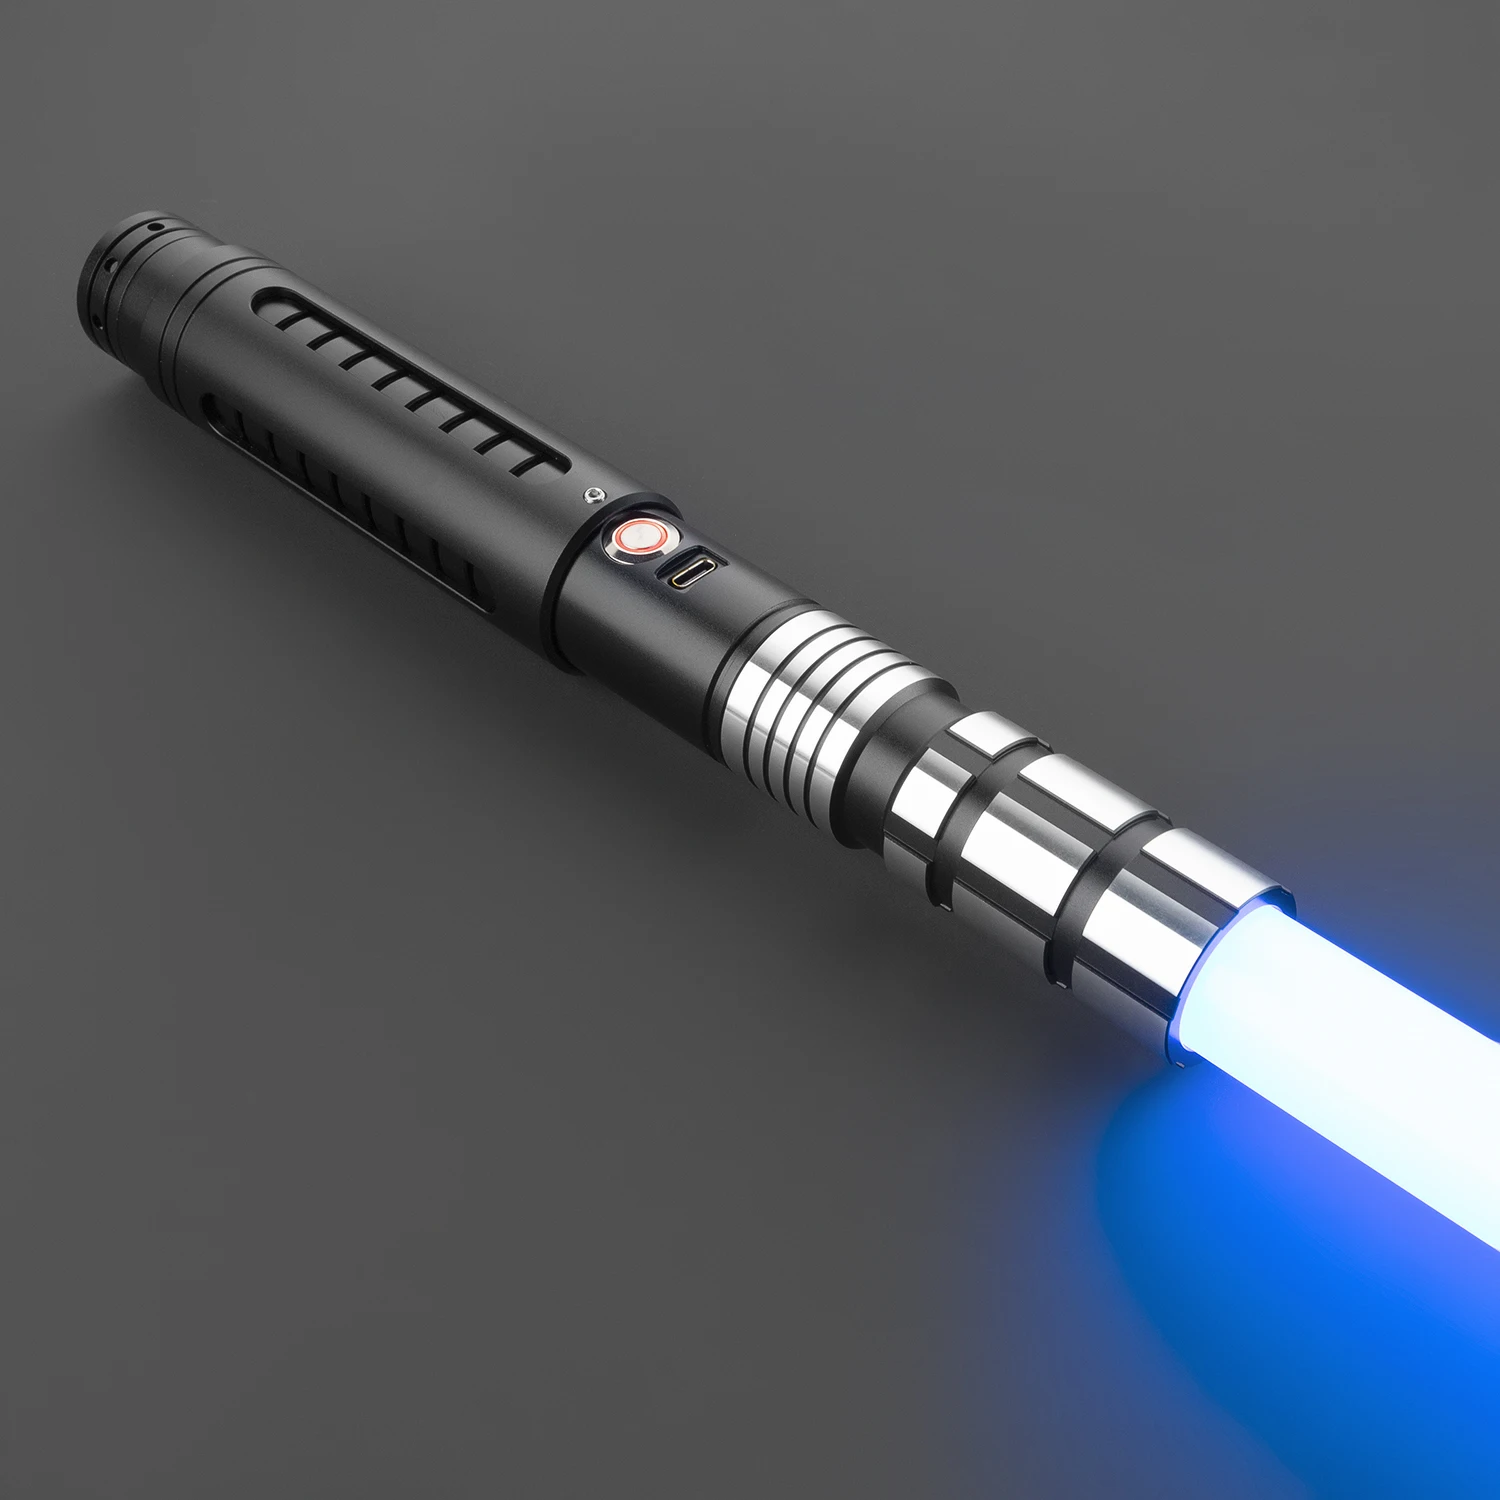 

Lightsaber Neopixel Jedi Laser Sword Metal Hilt Heavy Dueling Sensitive Smooth Infinite Changing Hitting Sound LTG Light Saber